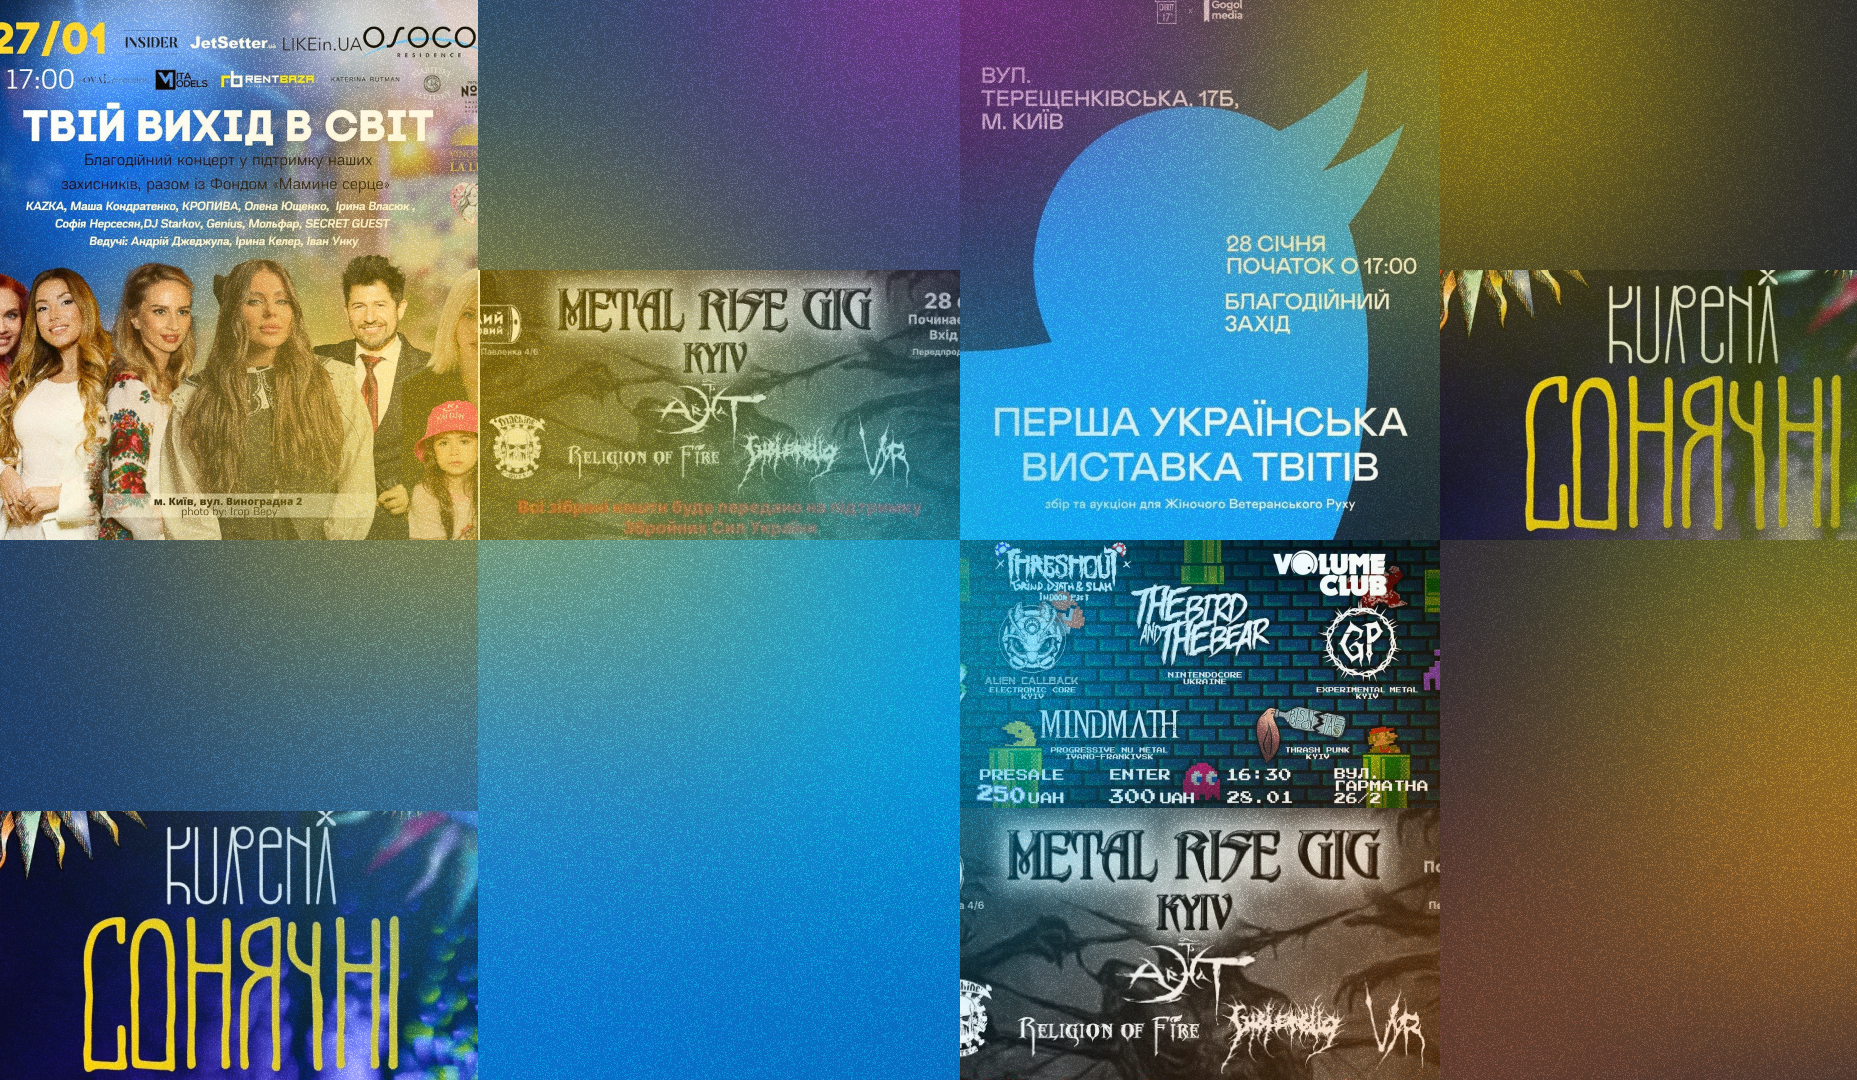 Сонячні Kureni, Threshout Fest та виставка твітів у Squat17b: куди піти у Києві 27-29 січня 